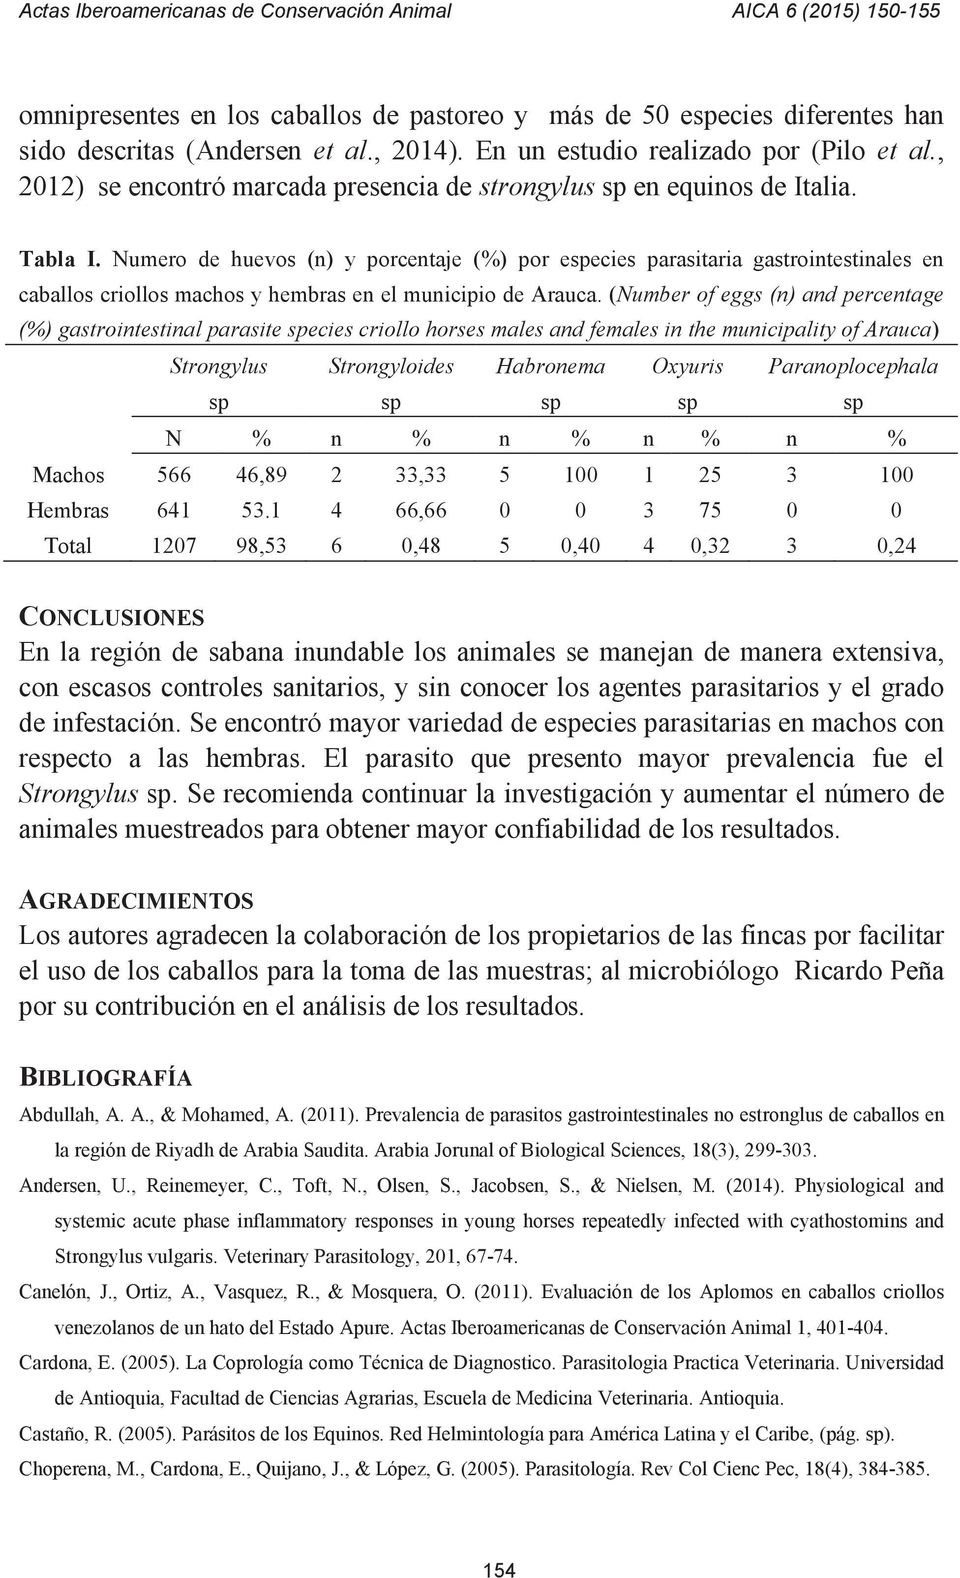 Numero de huevos (n) y porcentaje (%) por eecies parasitaria gastrointestinales en caballos criollos machos y hembras en el municipio de Arauca.